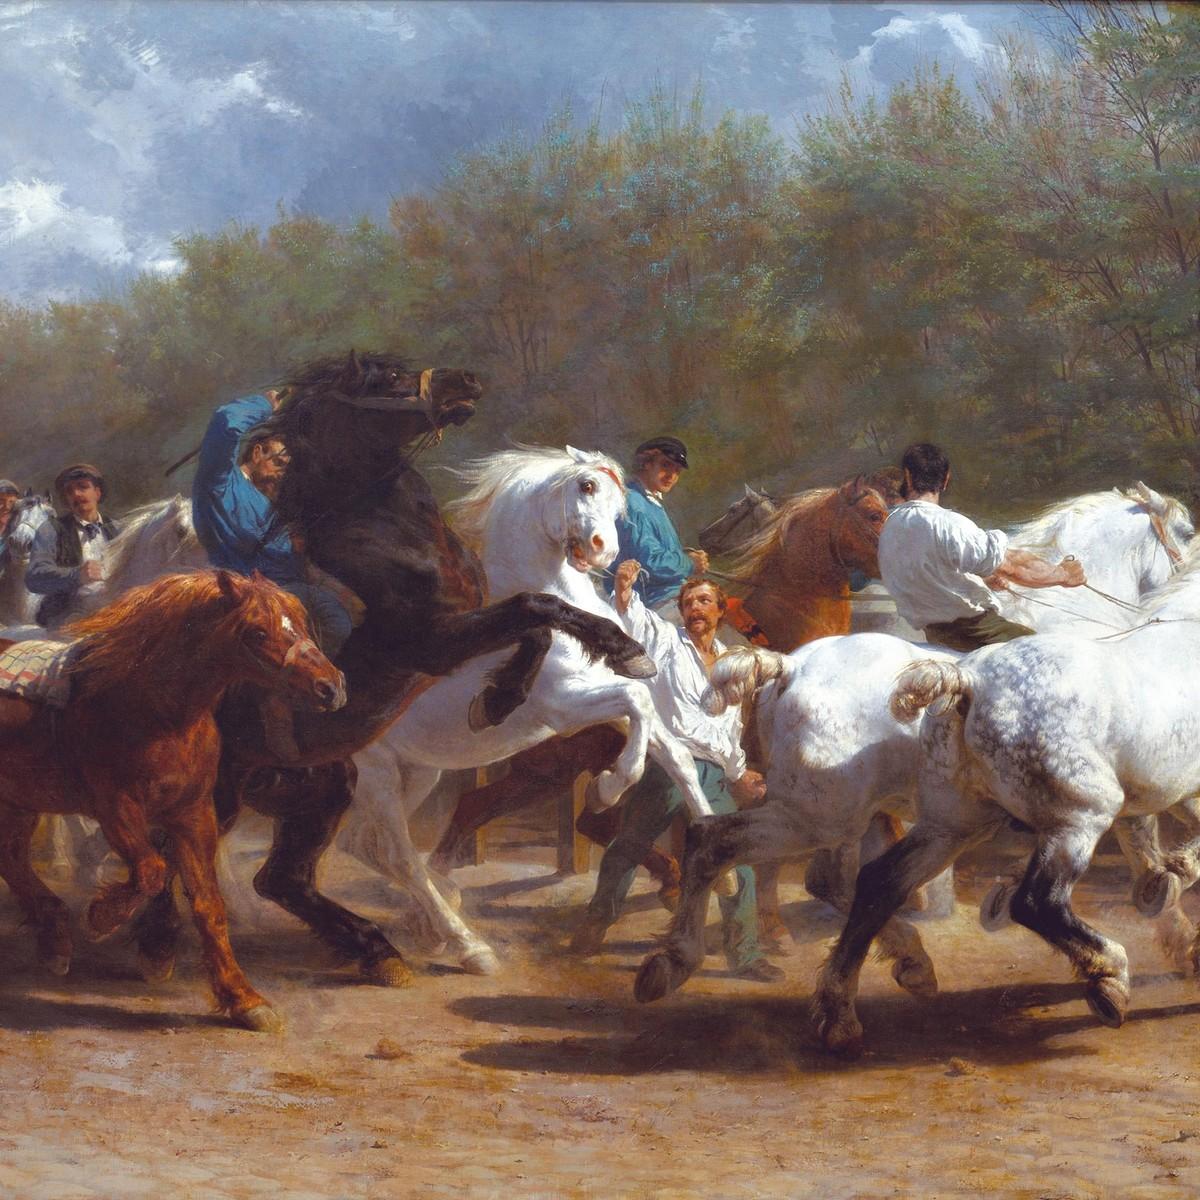 Rosa Bonheur, La foire du cheval, 1867